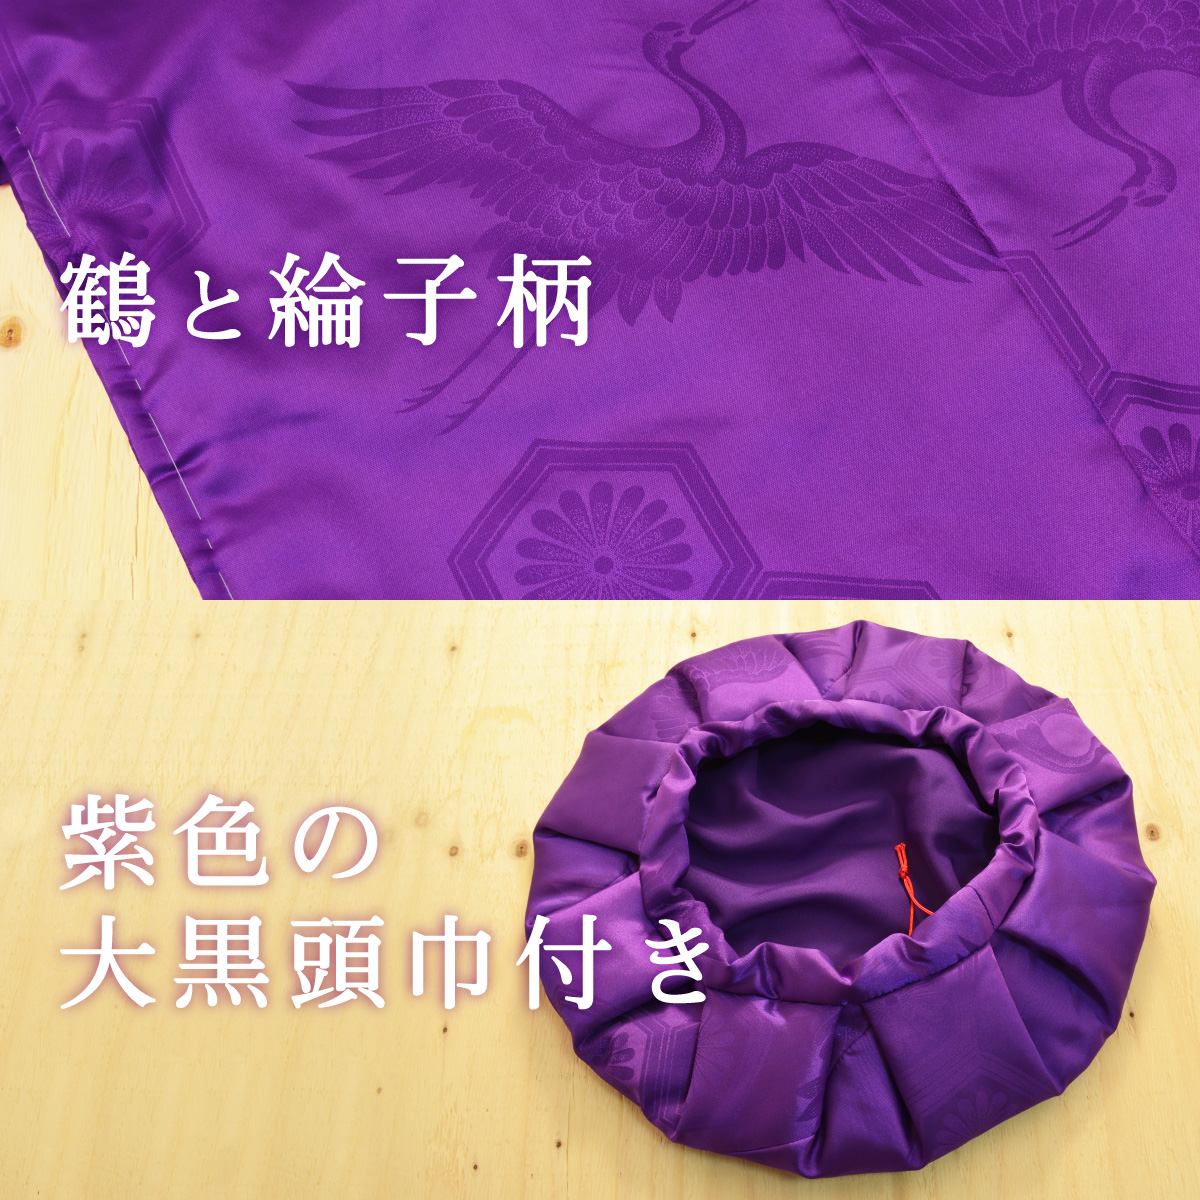 生地には鶴と綸子柄入り、紫色の大黒頭巾付き